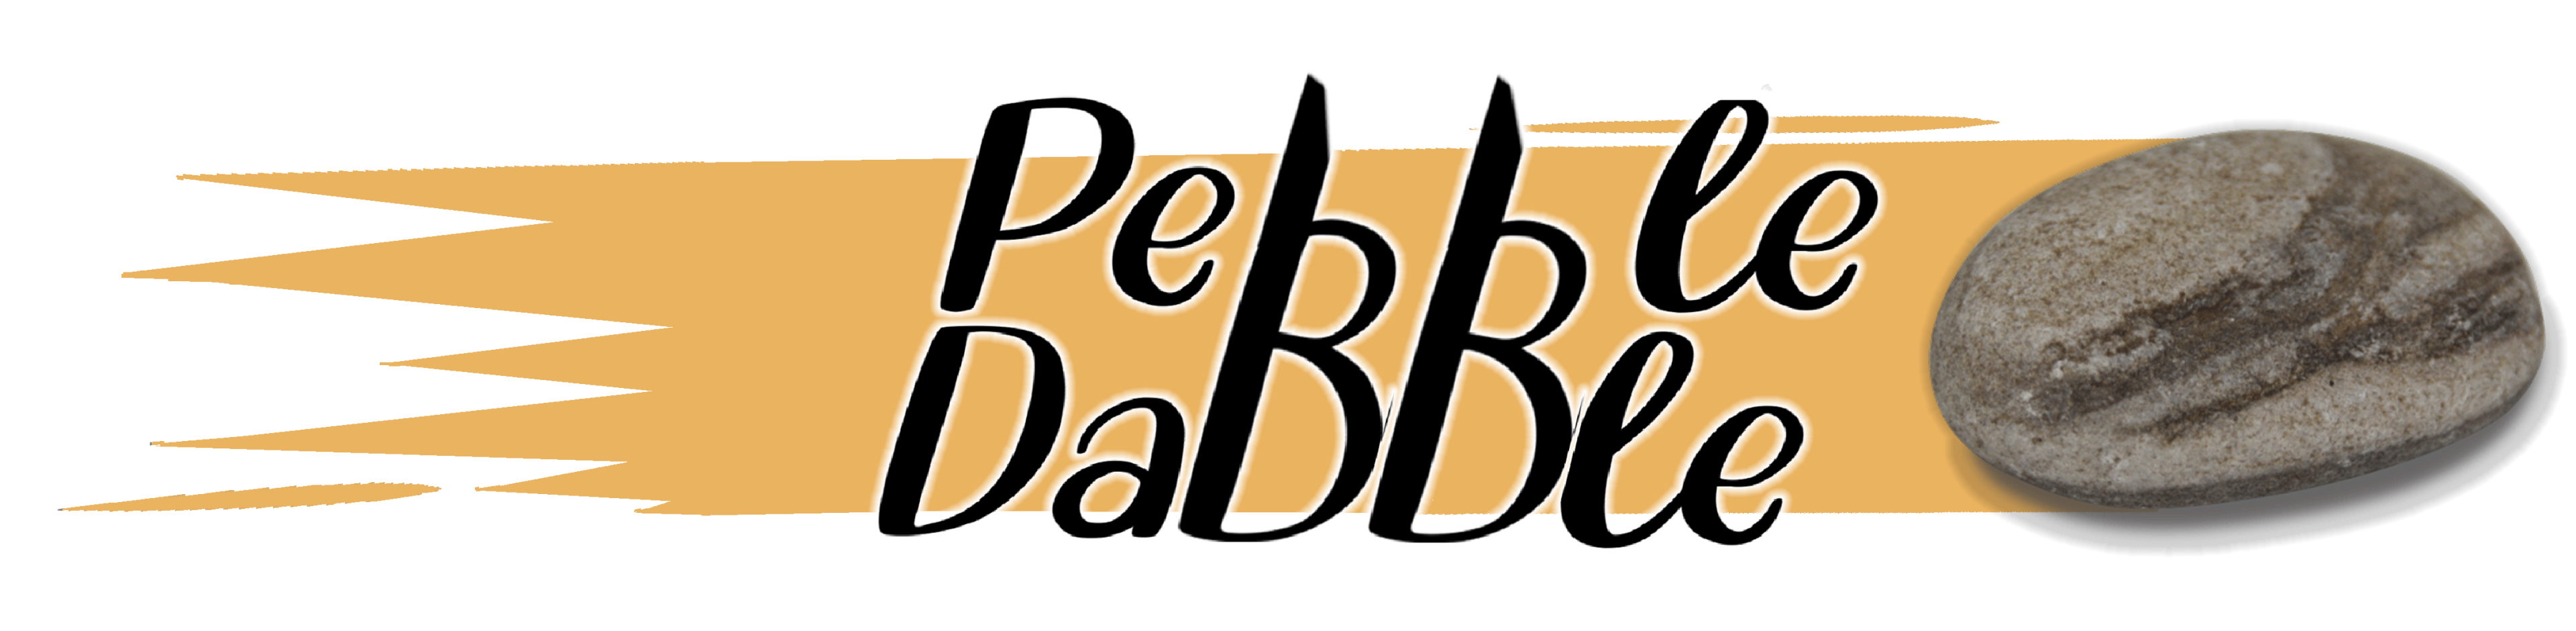 Pebble Dabble